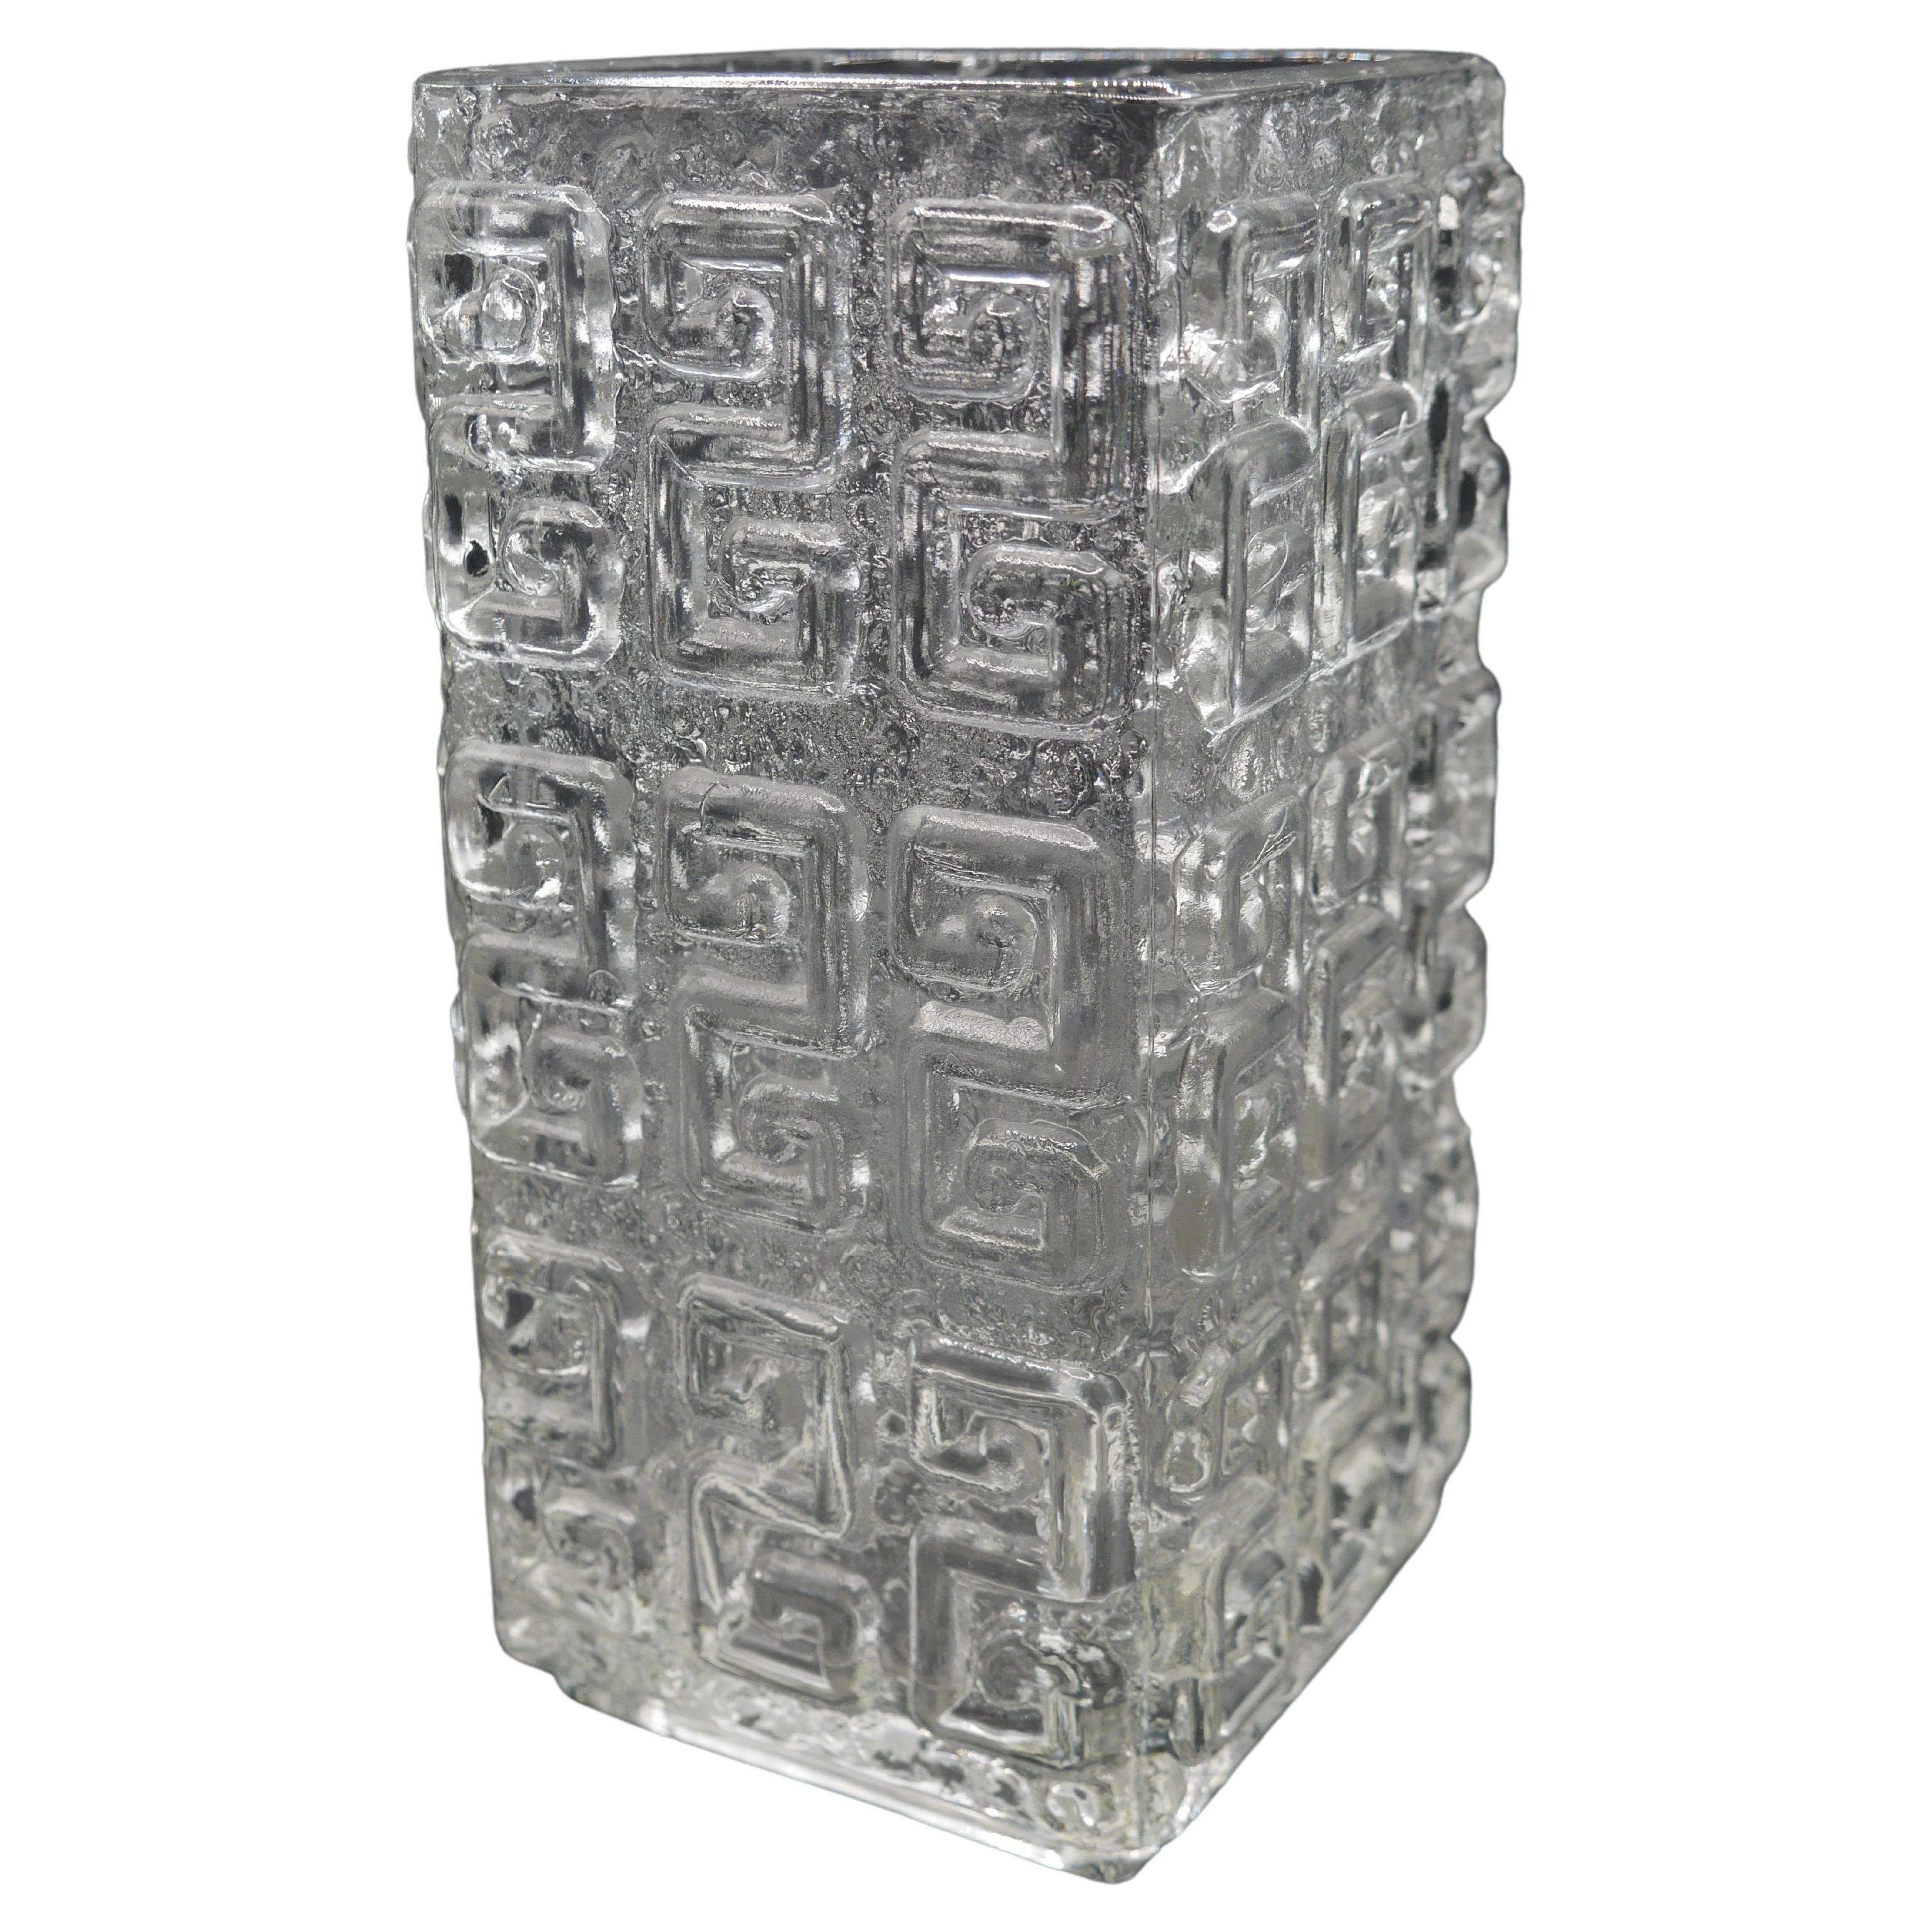 Mid-century modern crystal vase from Riihimäen lasi made by Tamara Aladin